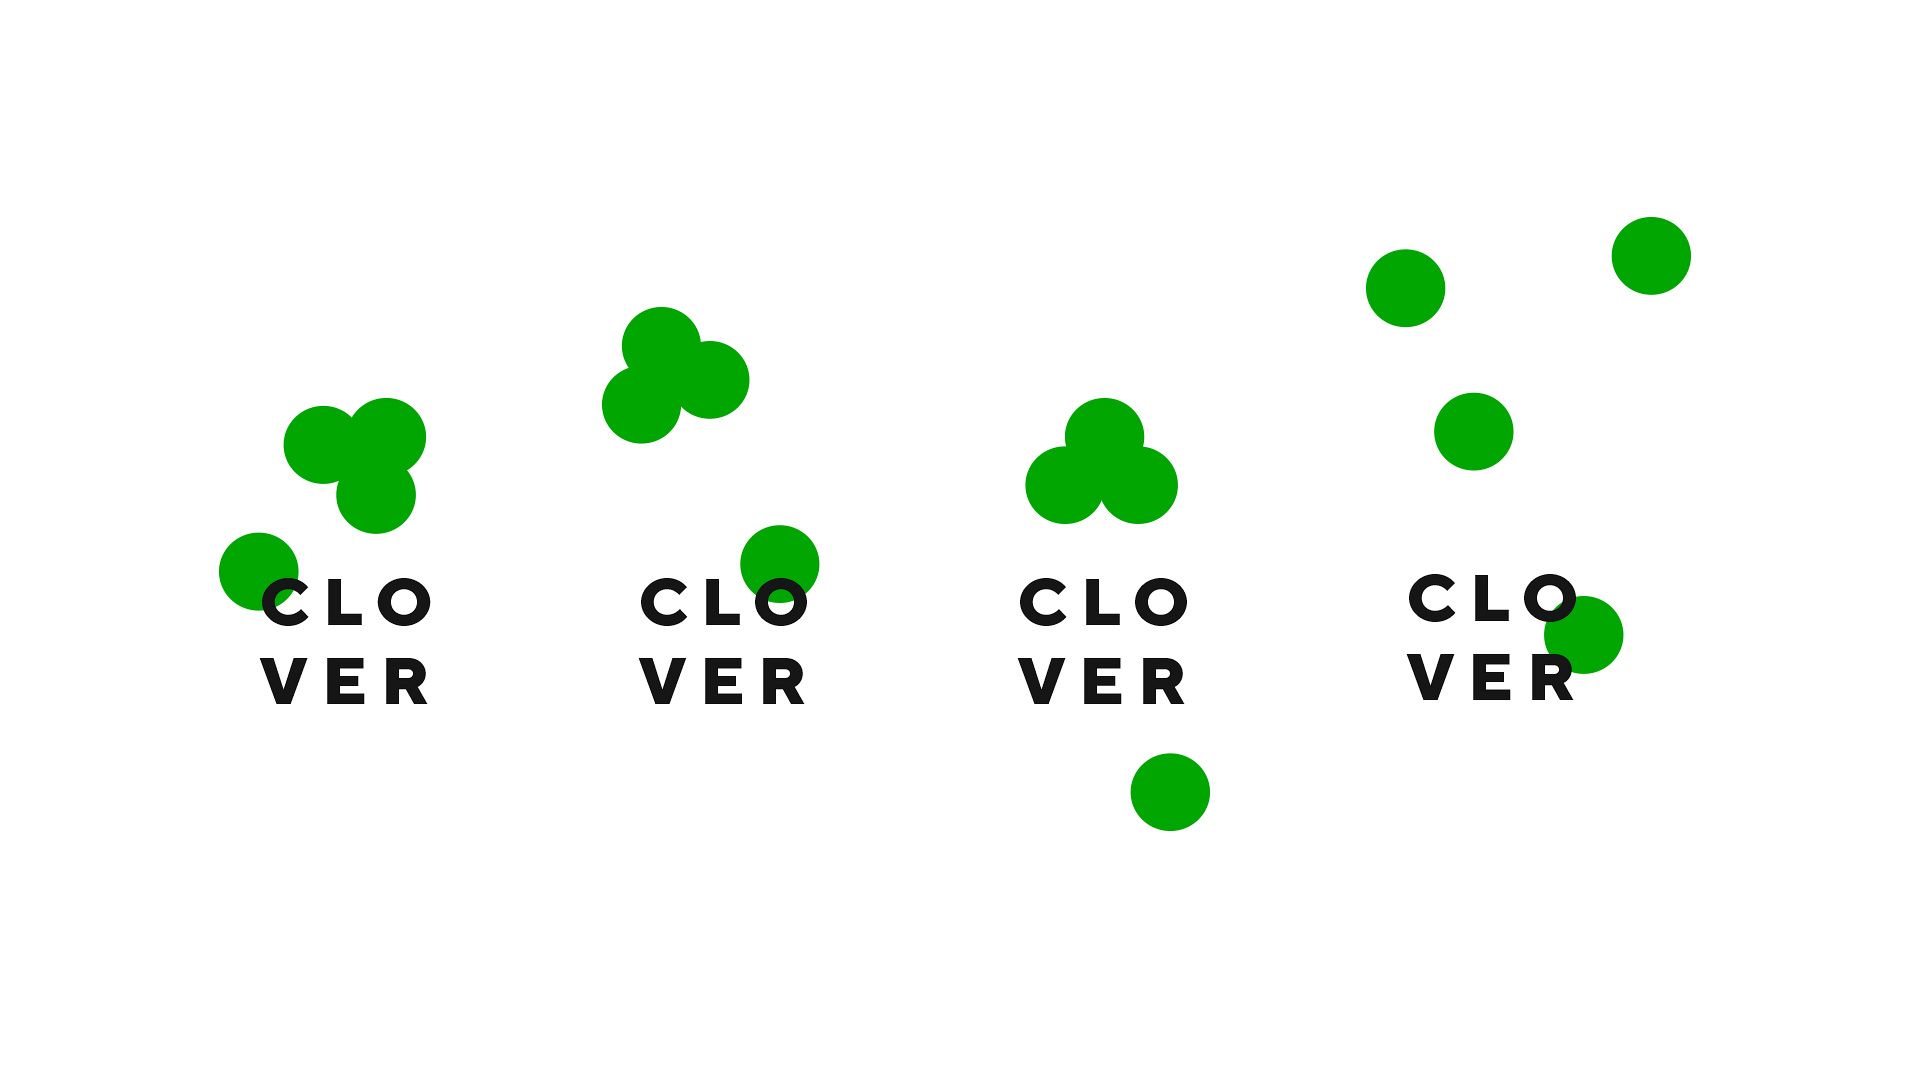 clover_03-1